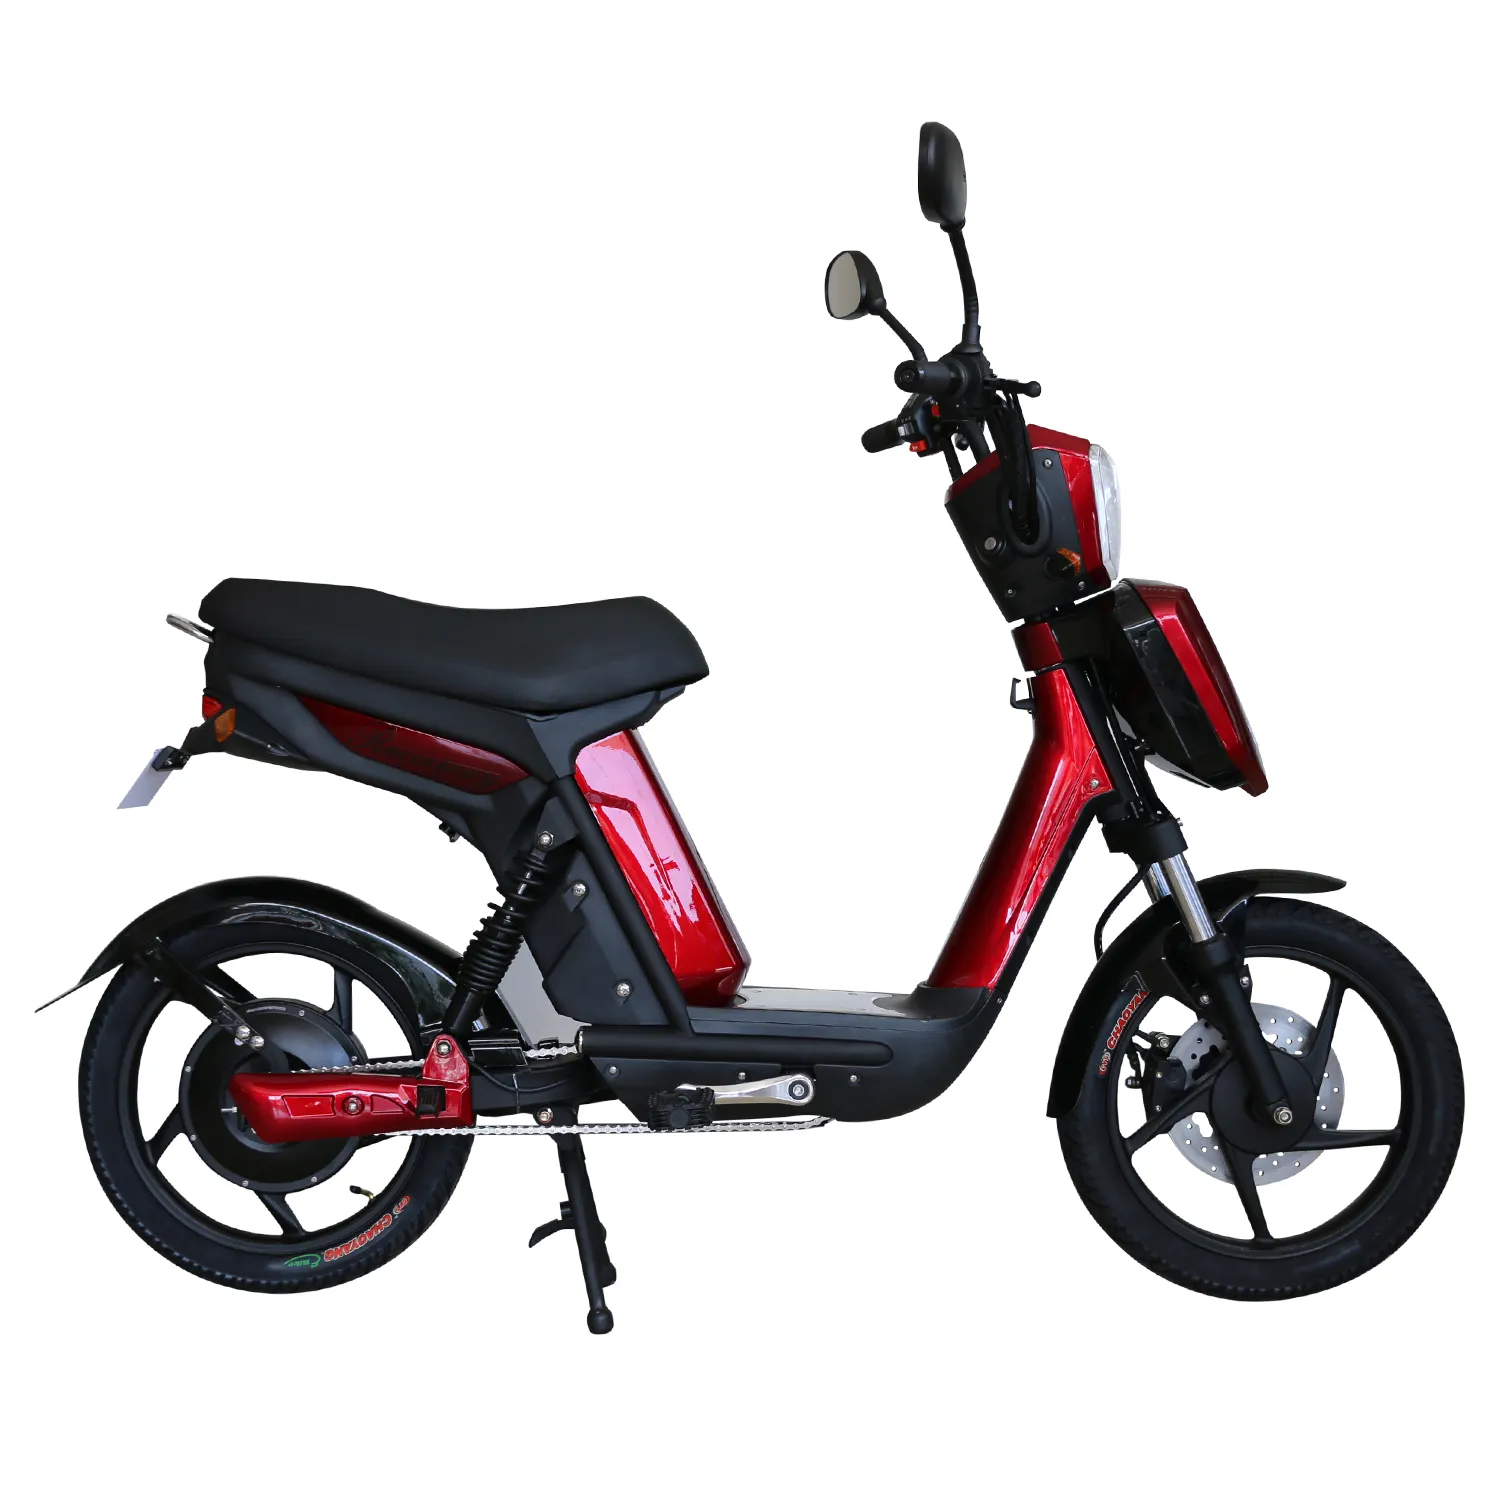 Yeni tasarım klasik tasarım güçlü elektrikli motosiklet fabrika doğrudan satış 48v elektrikli scooter 250W 500W elektrikli motosiklet